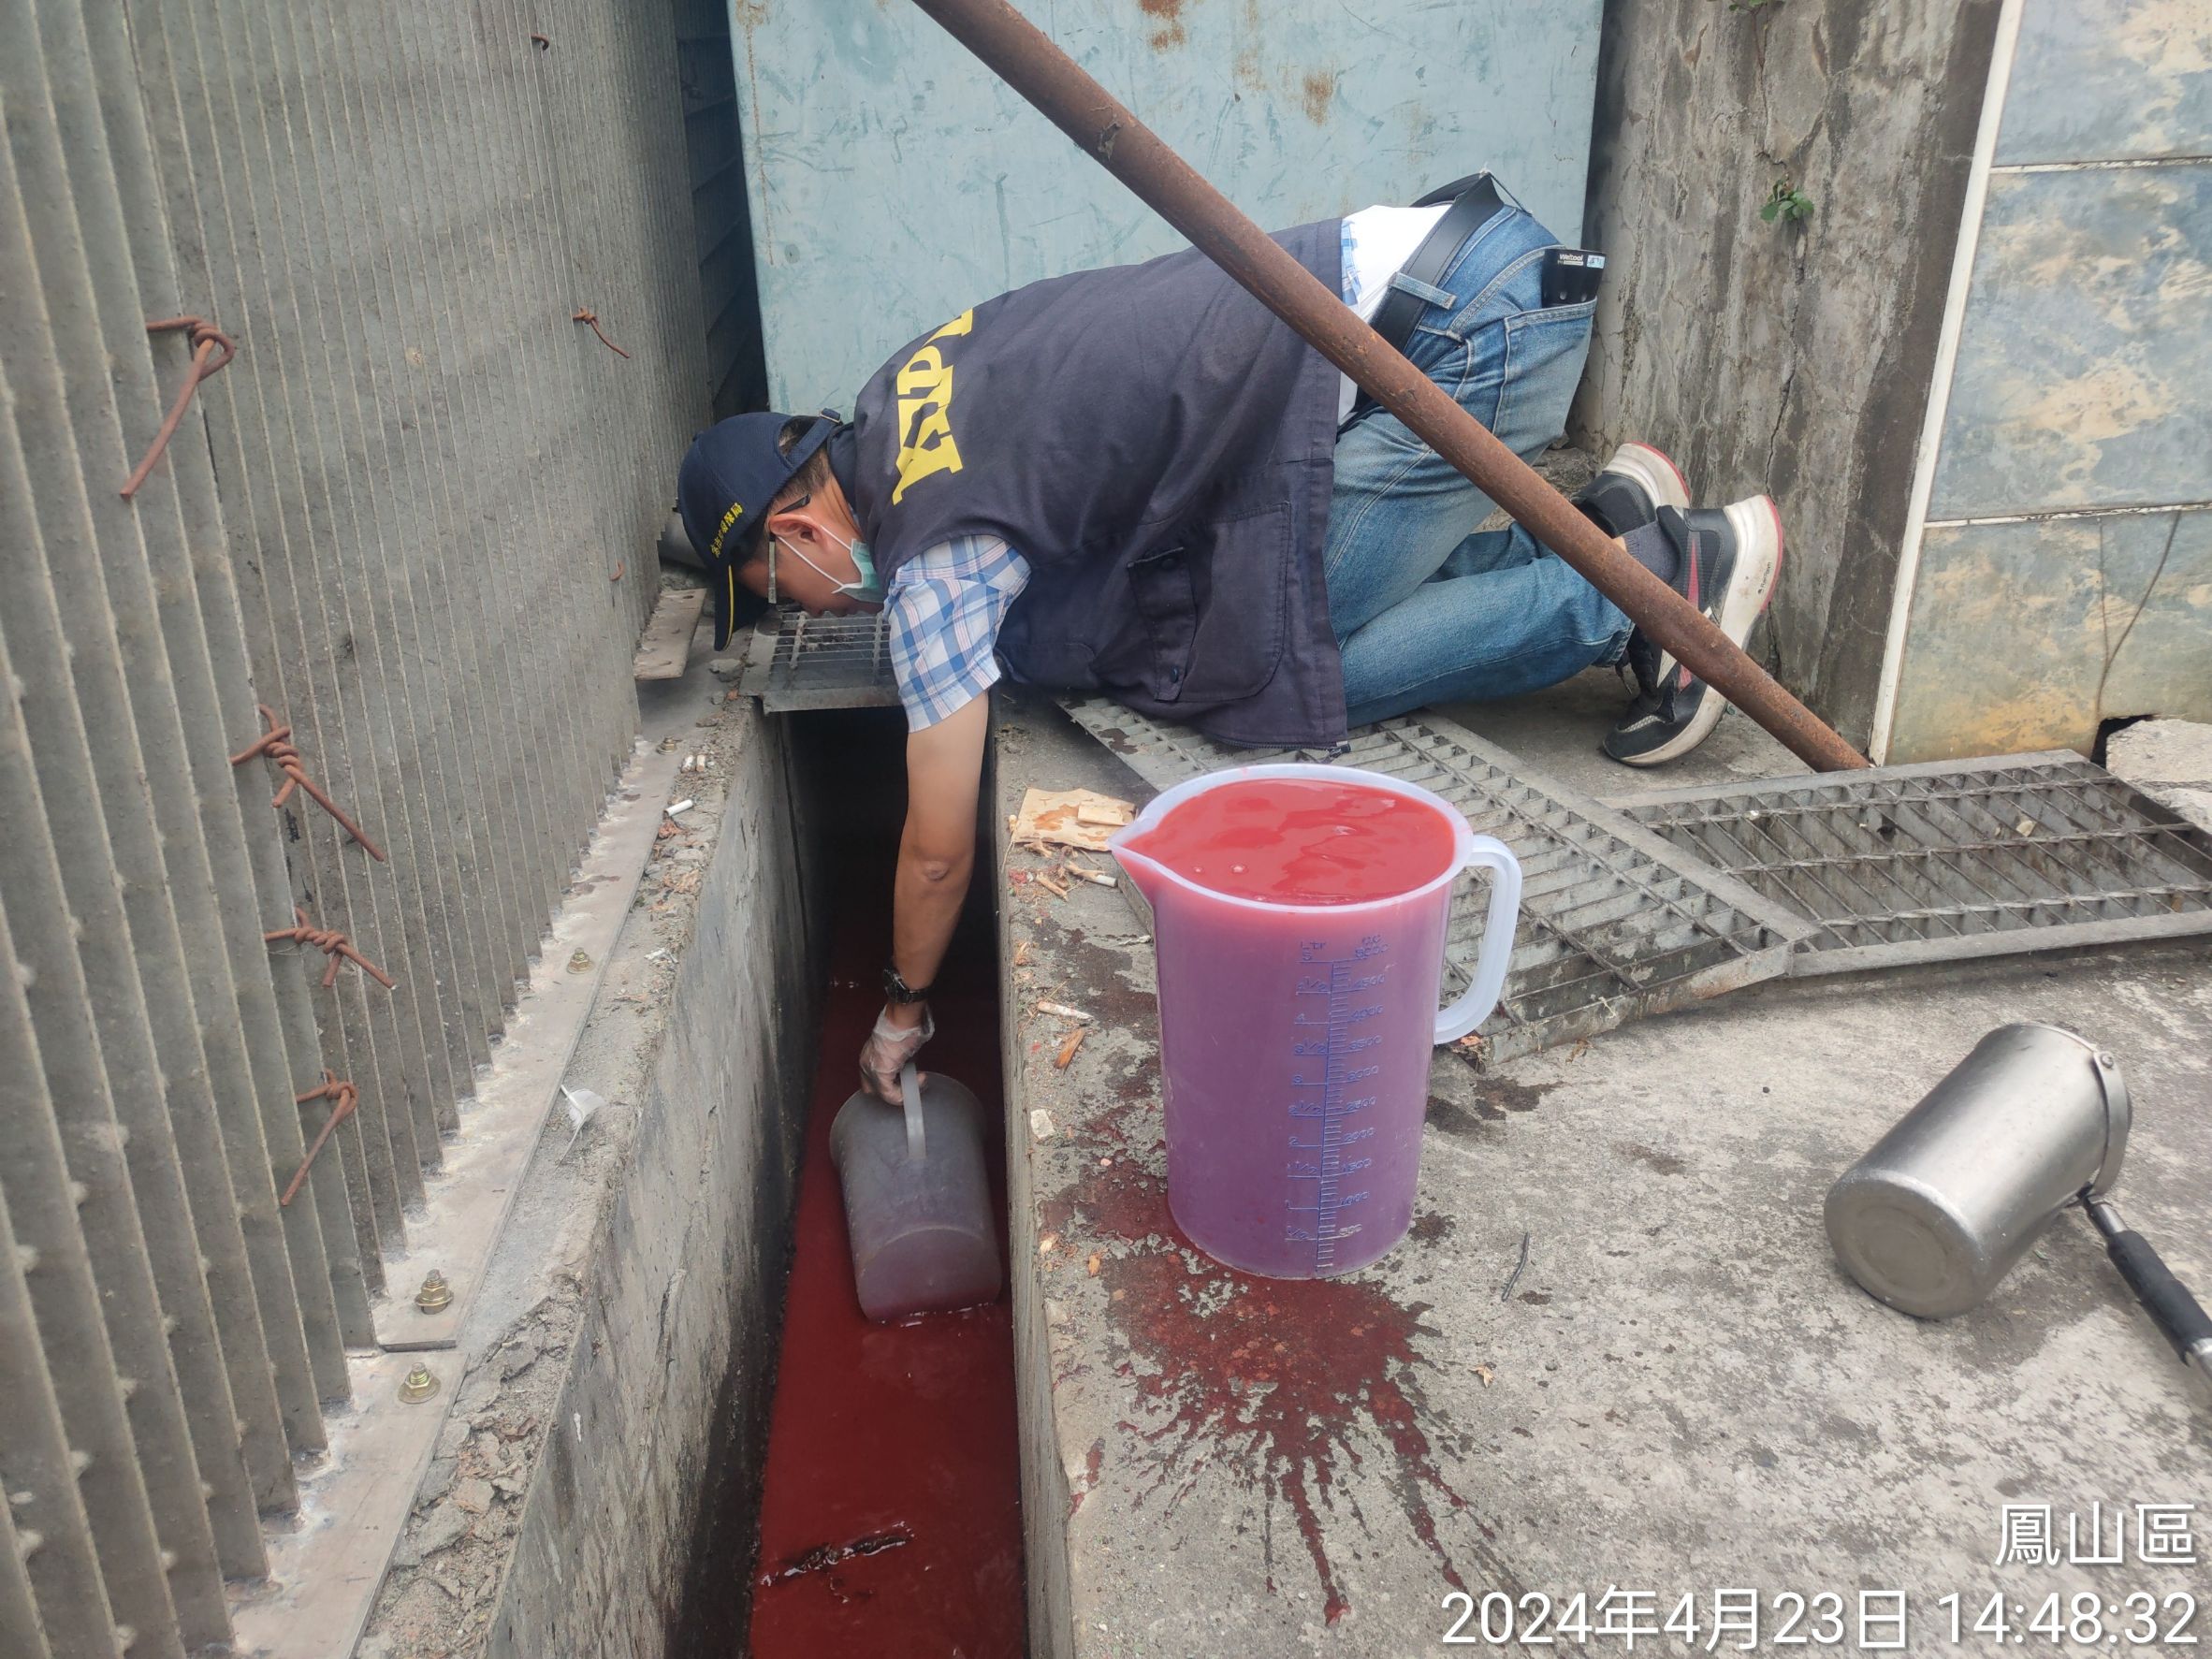 凤山保健食品工厂偷排血红色废水 环保局依法开罚并限期改善